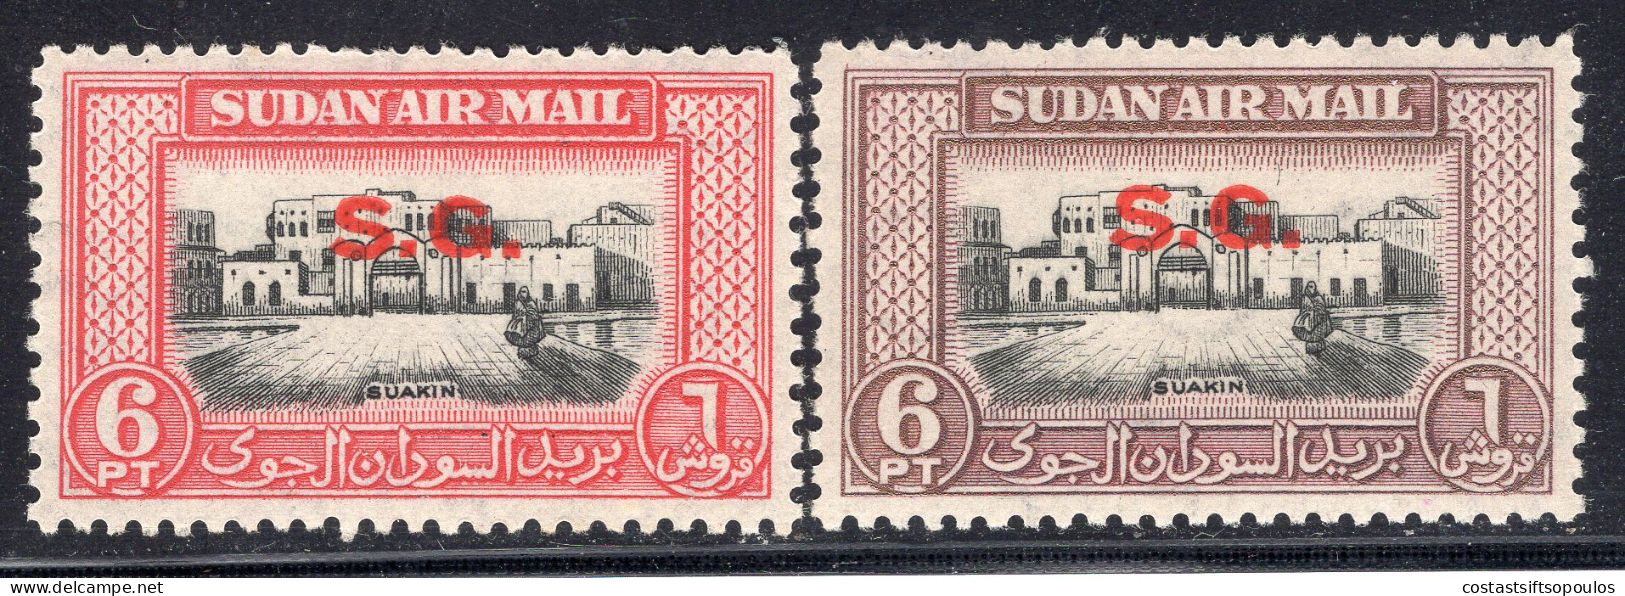 2264. SUDAN. 1950 OFFICIAL 6 P. COLOUR ERROR ??? MNH - Sudan (...-1951)